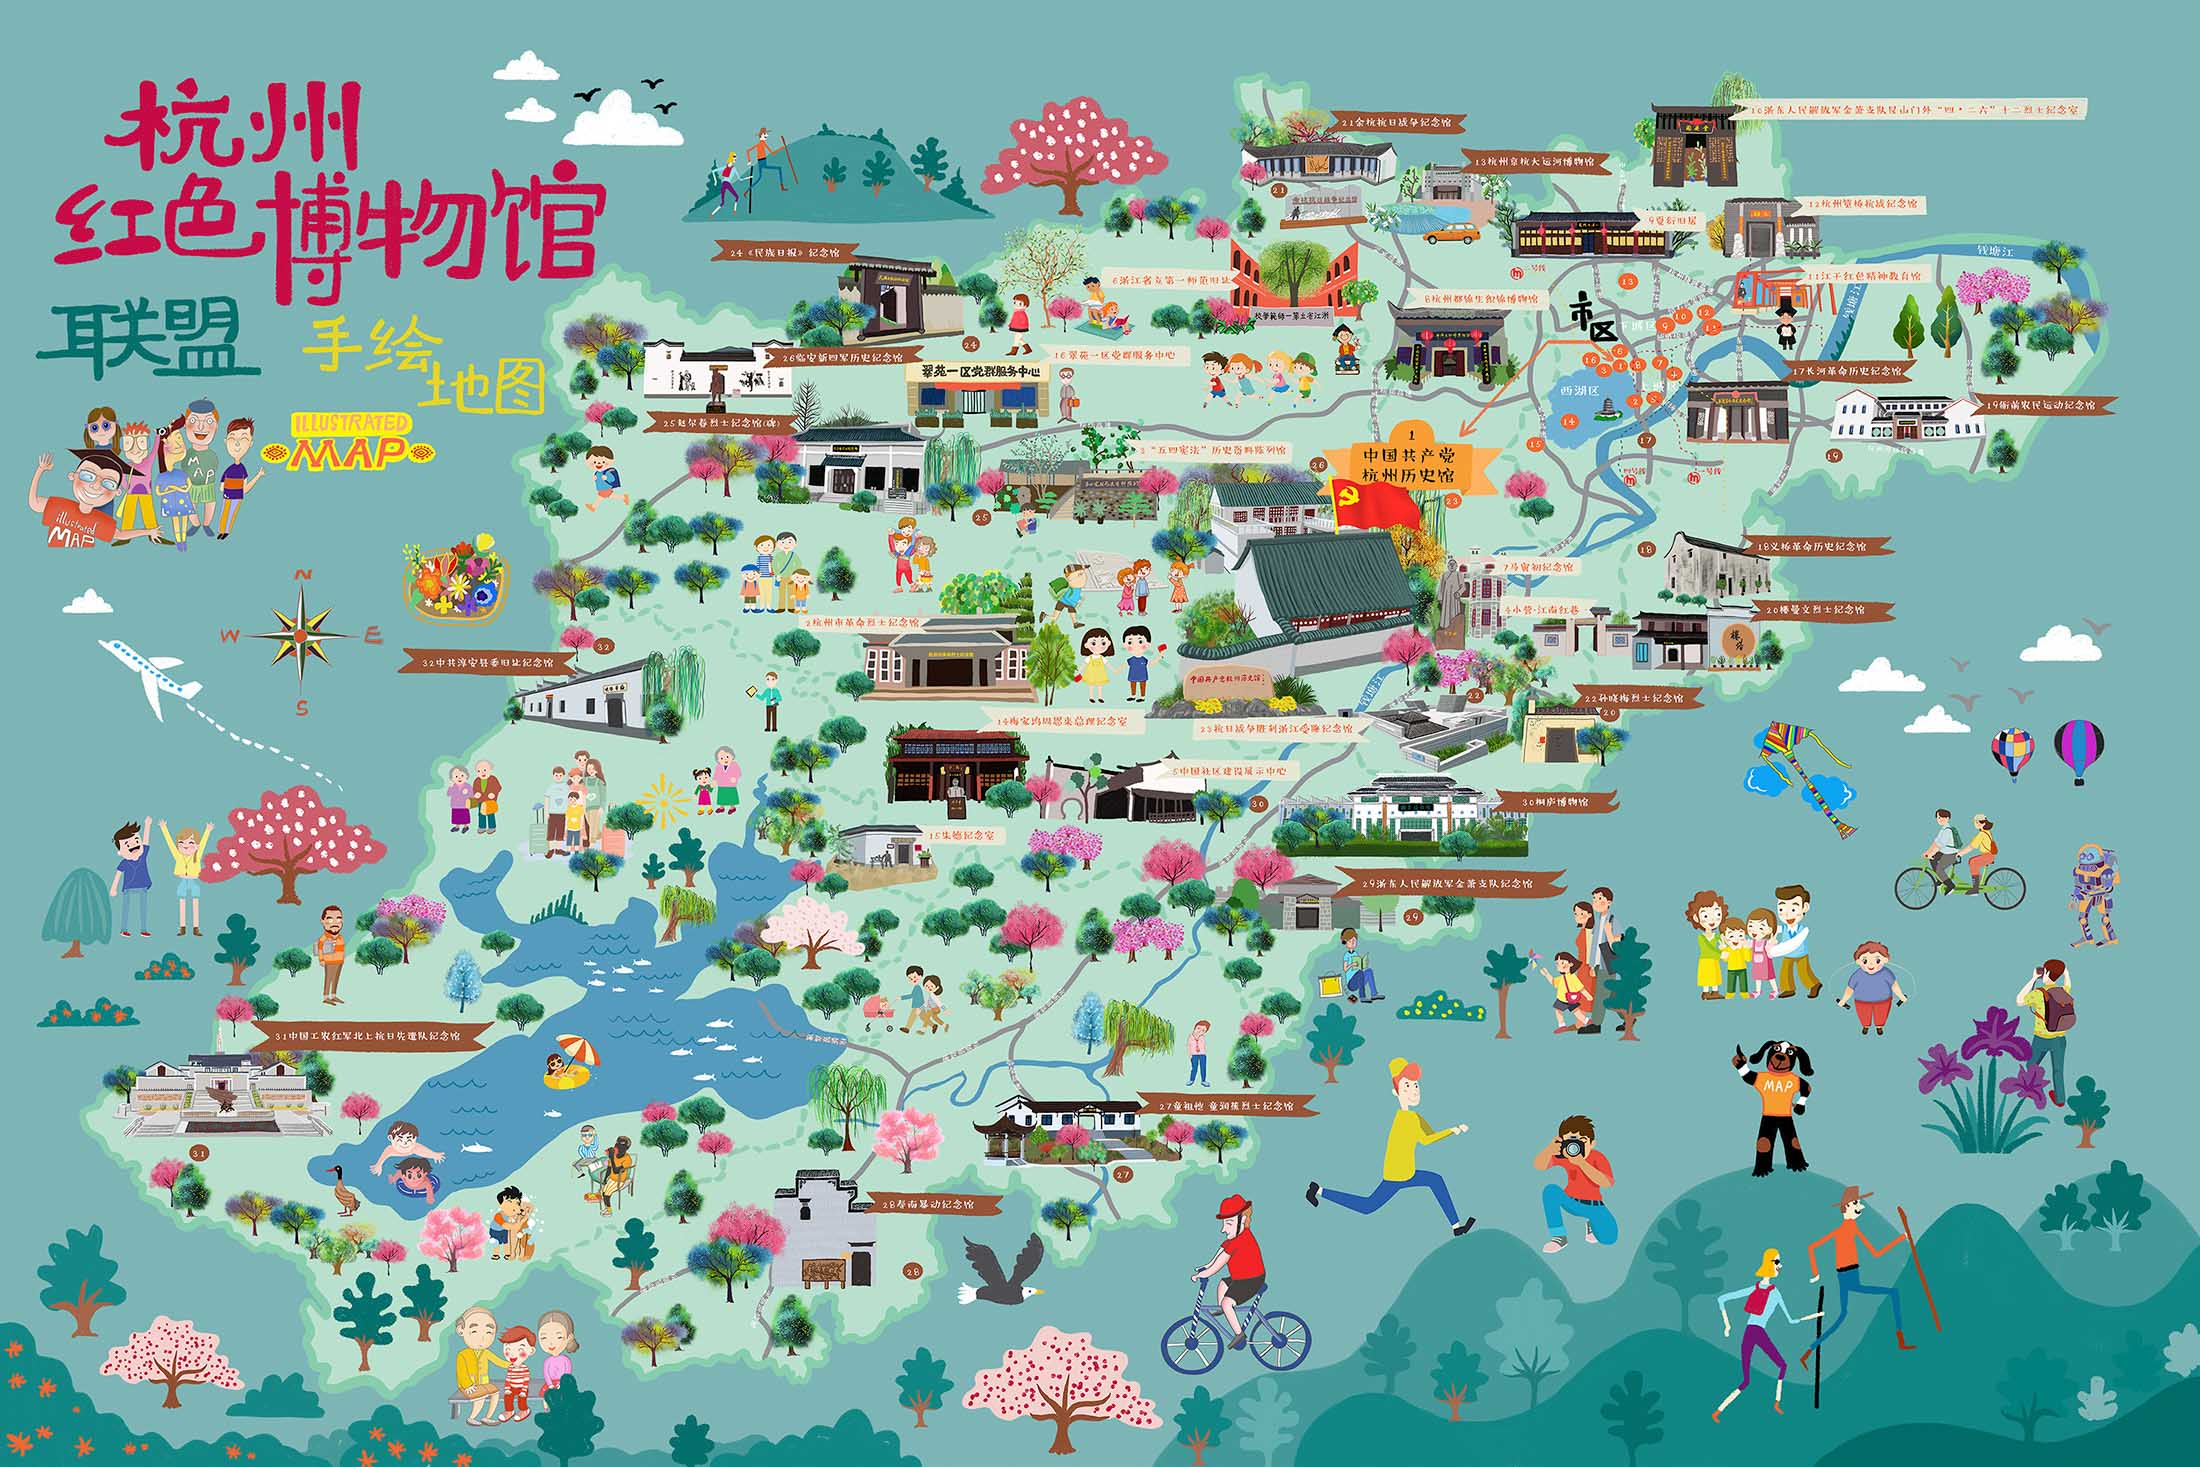 滨江手绘地图与科技的完美结合 